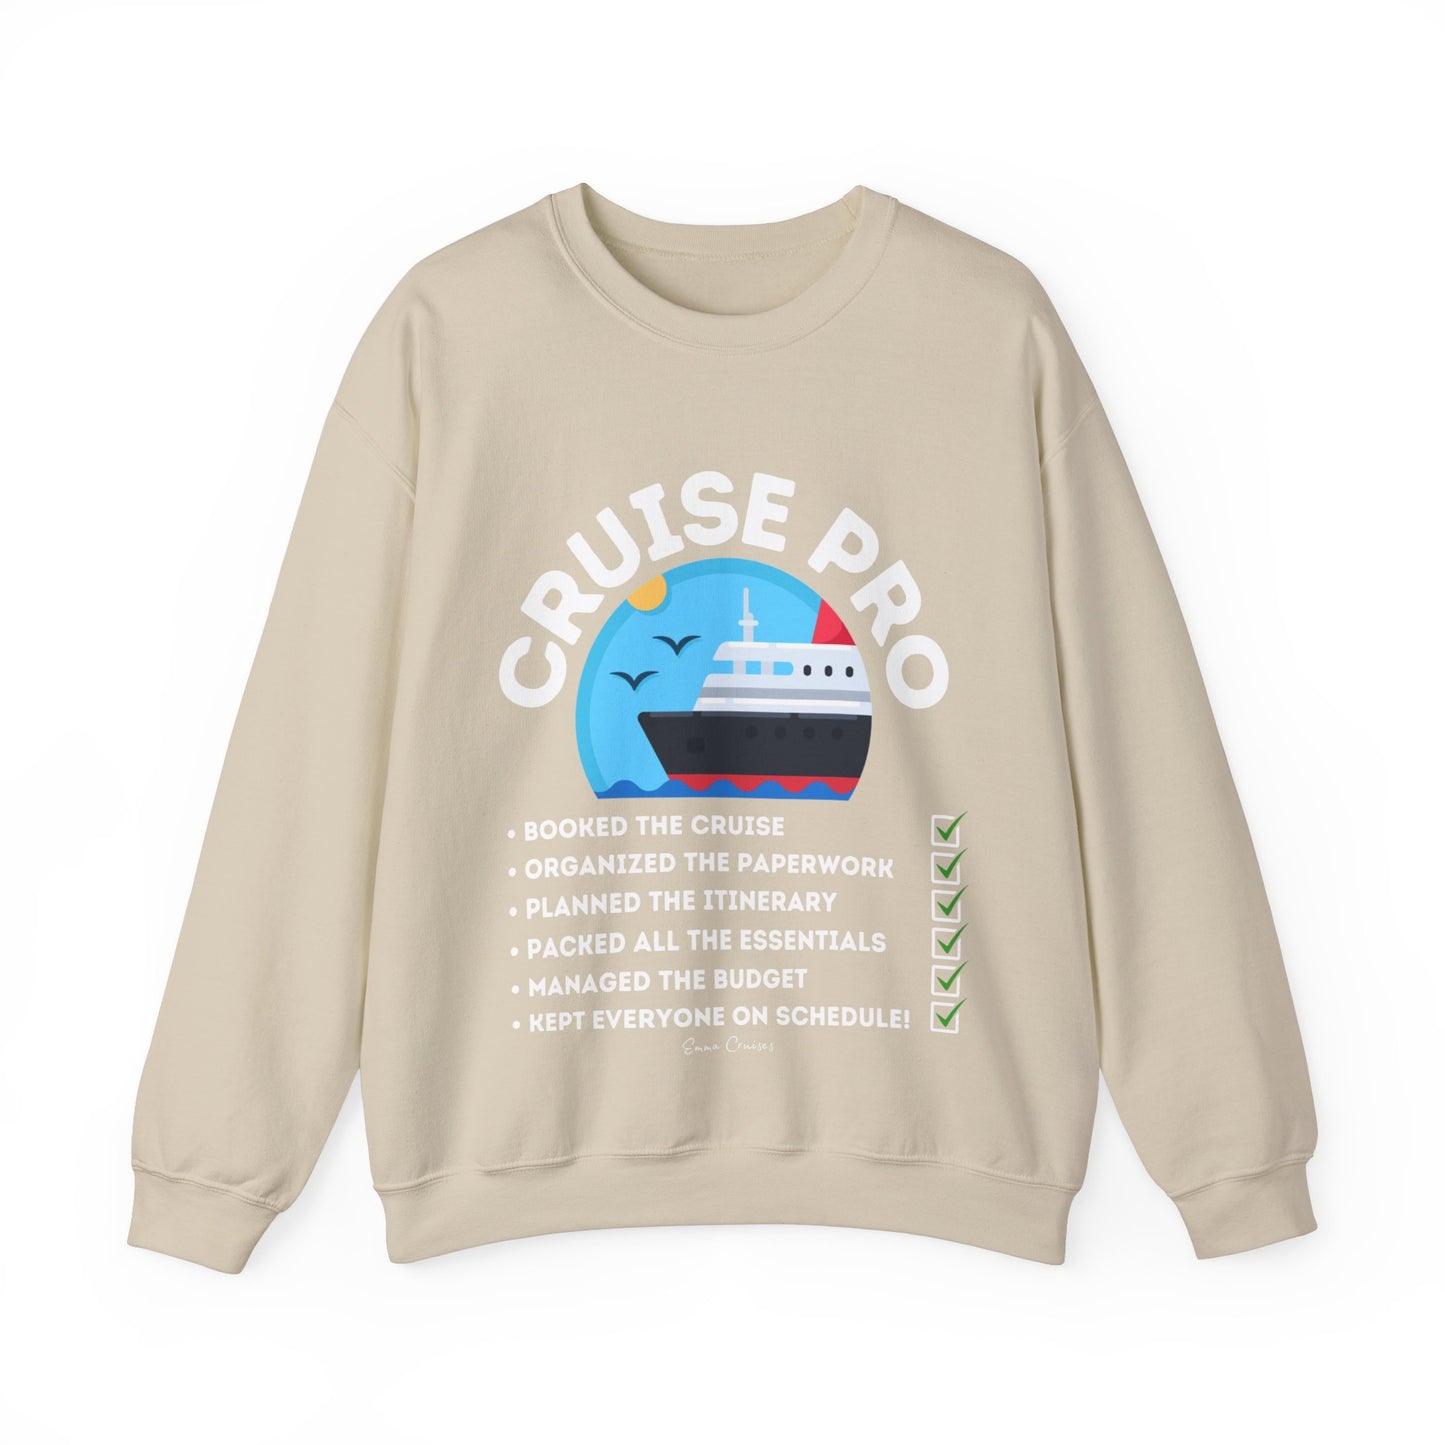 I'm a Cruise Pro - UNISEX Crewneck Sweatshirt